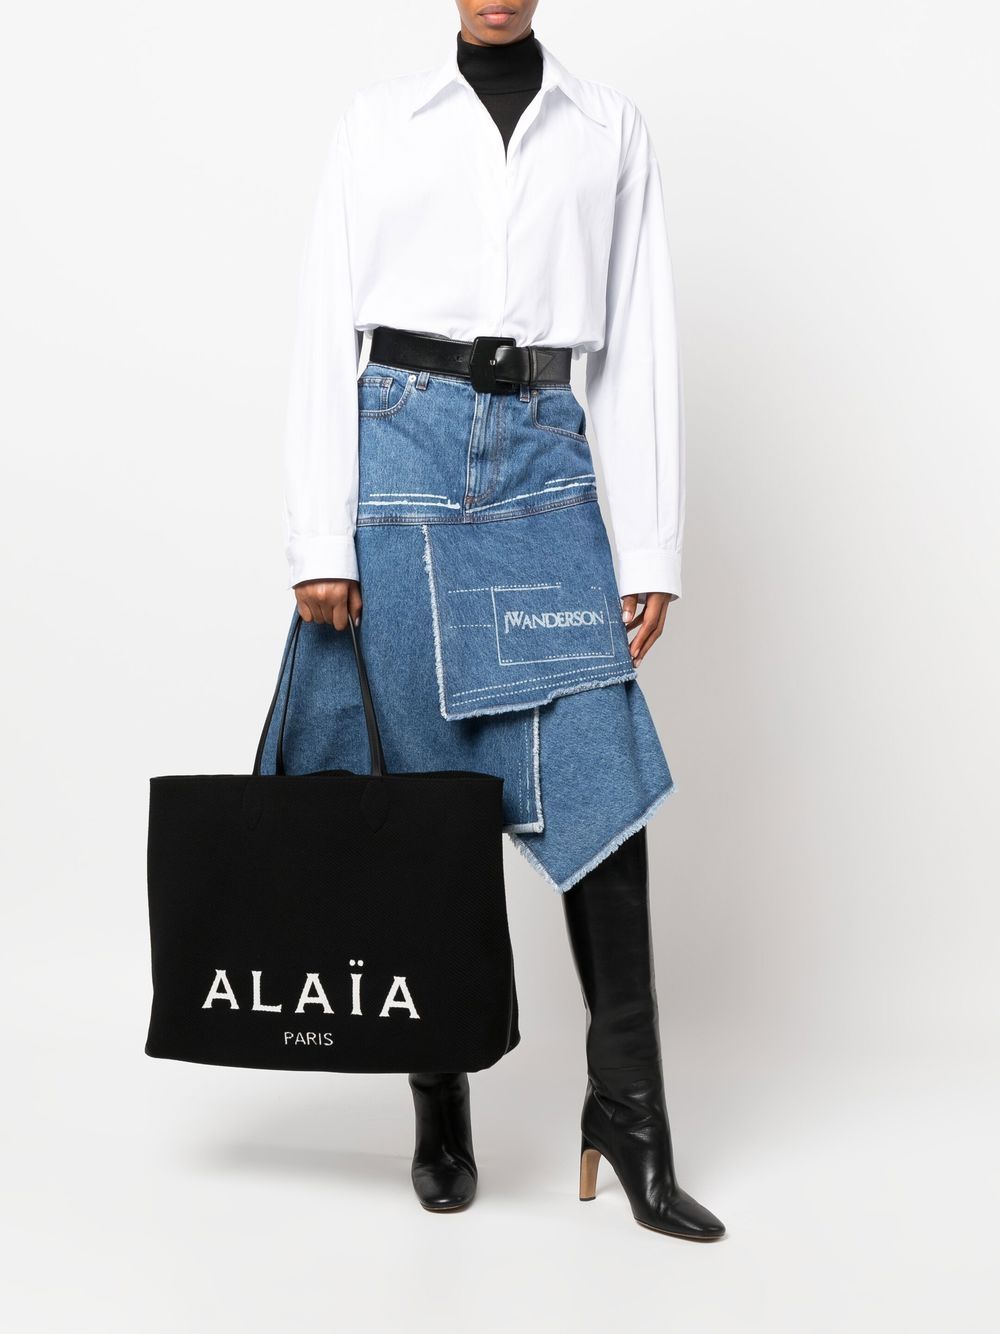 Alaïa ALAÏA- Logo Large Shopping Bag